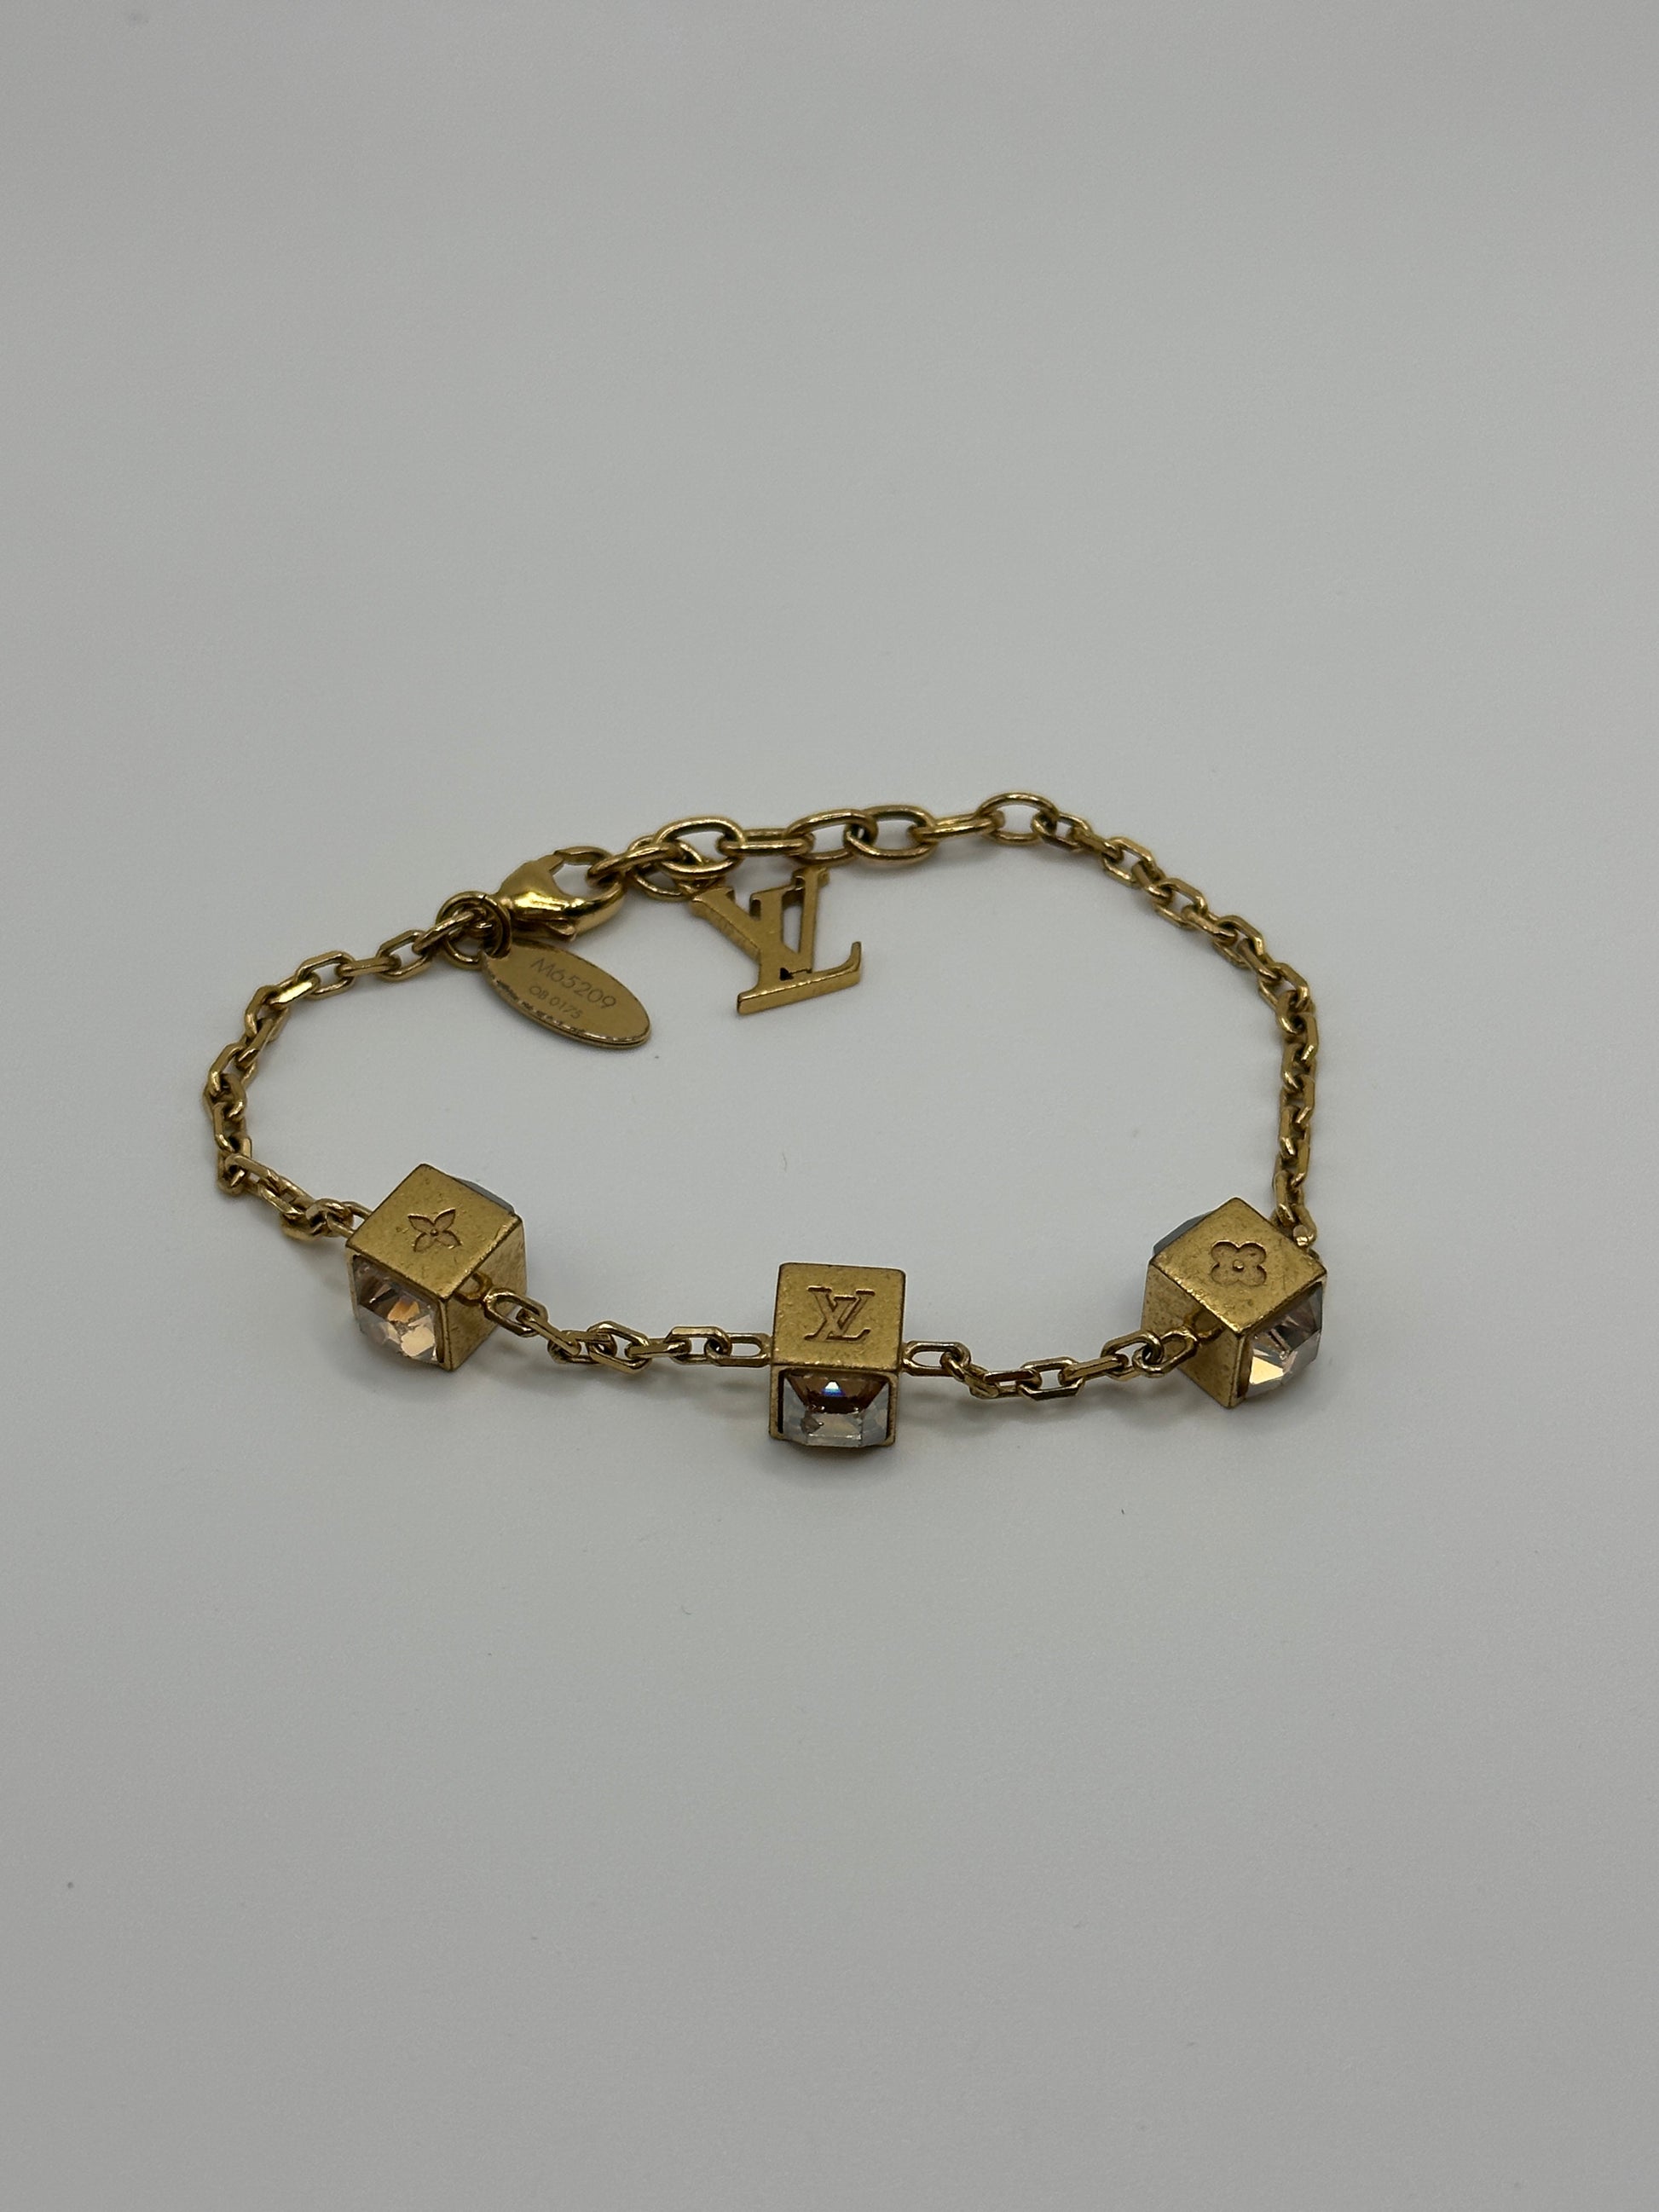 Louis Vuitton Louisette Necklace Gold Brass